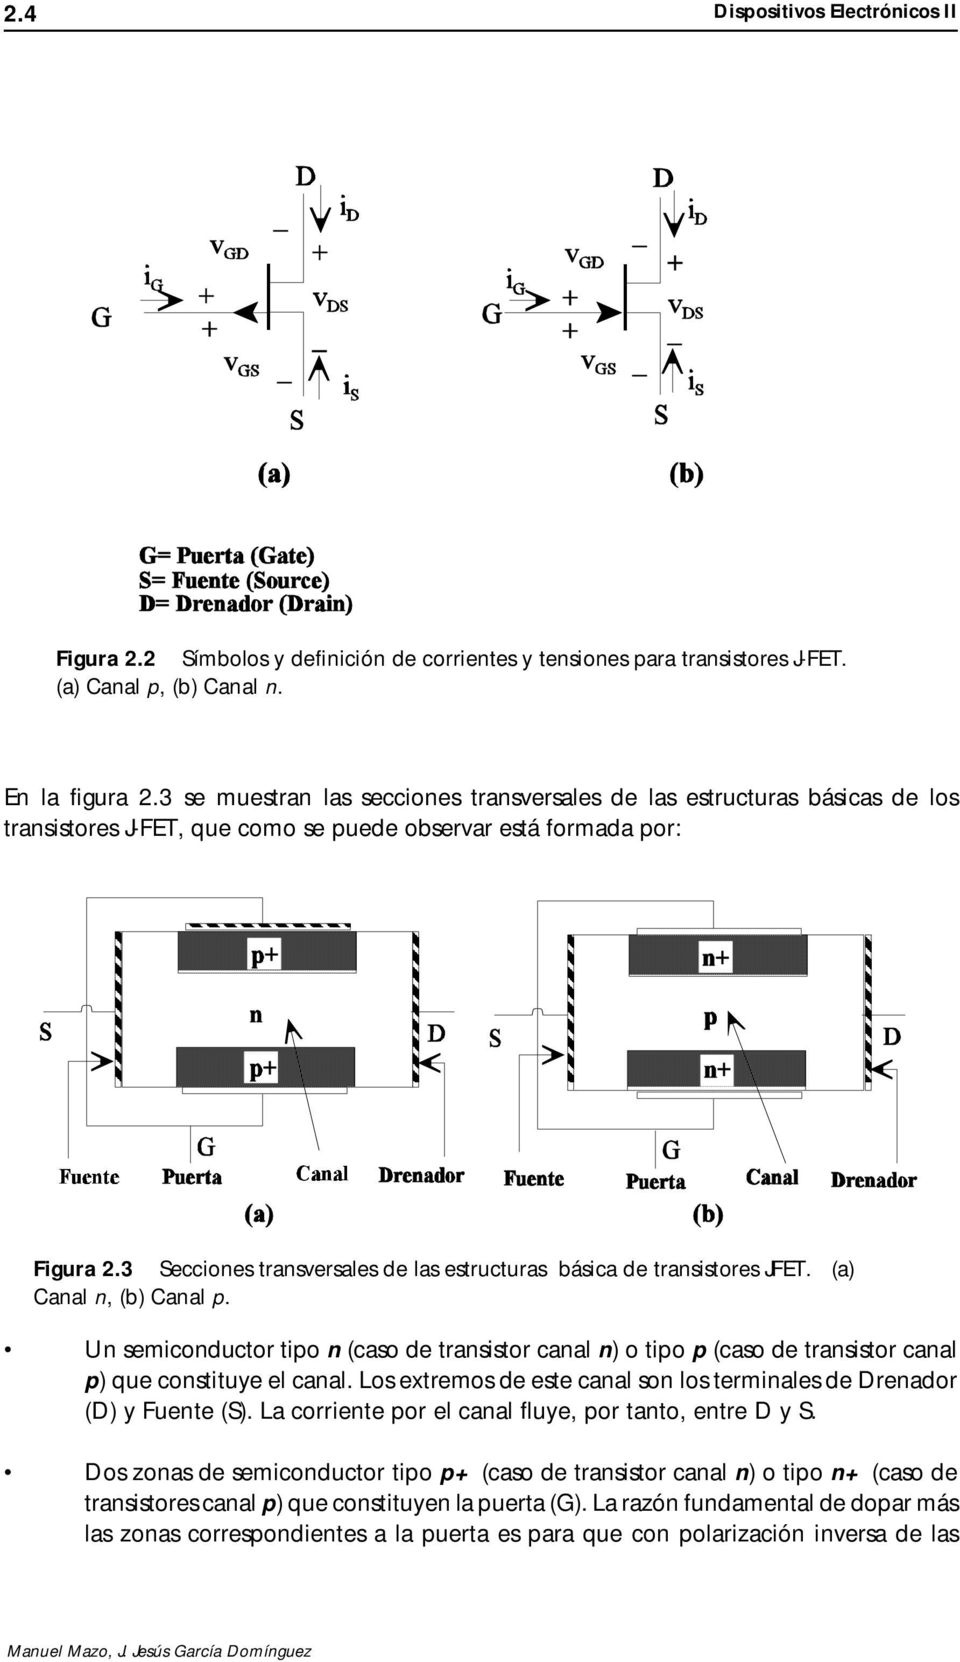 3 Secciones transversales de las estructuras básica de transistores JFET. (a) Canal n, (b) Canal p.